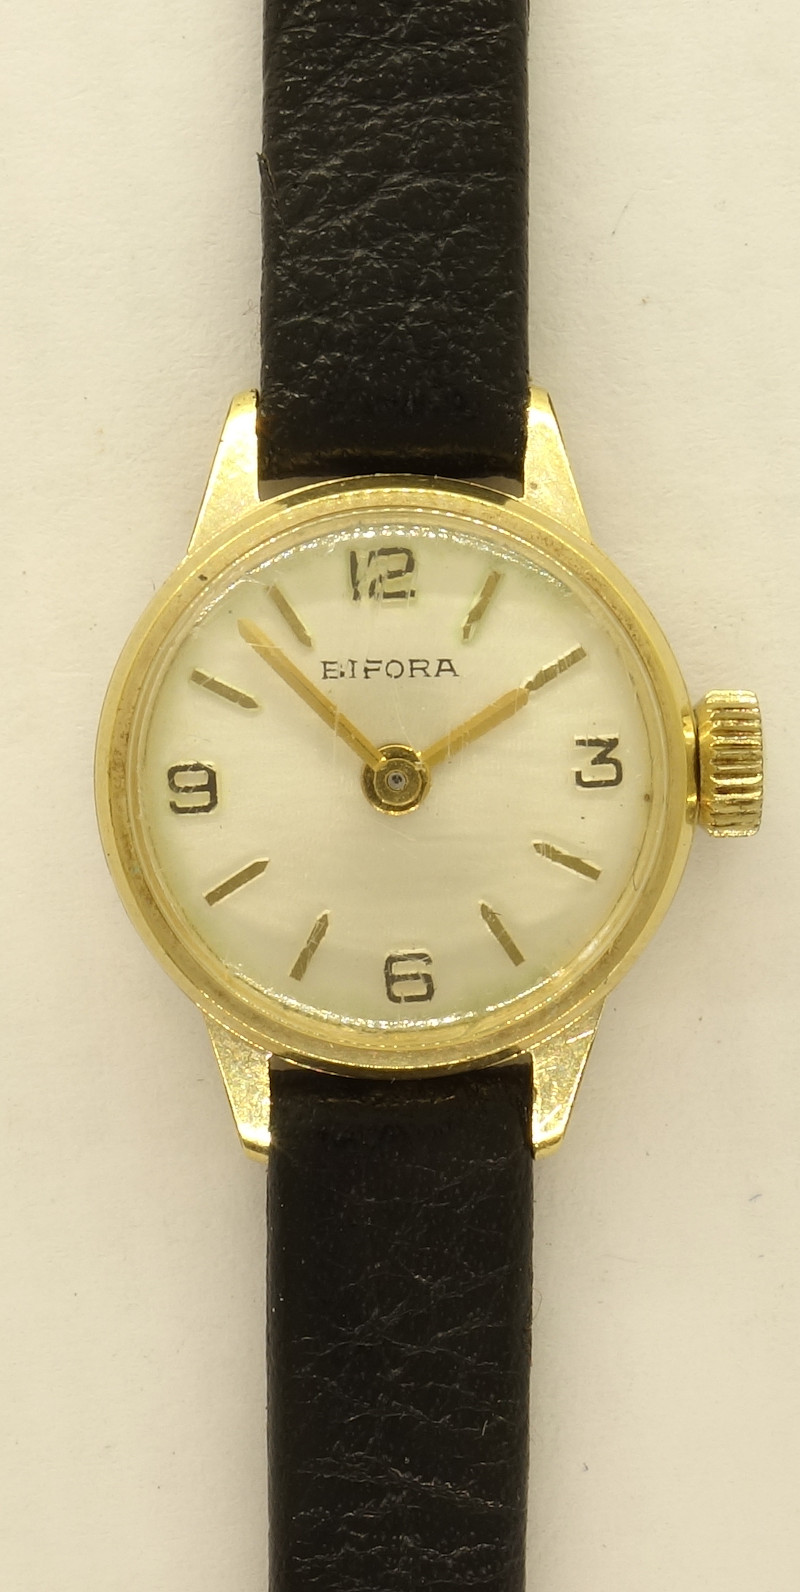 Bifora 52/2: Bifora ladies' watch